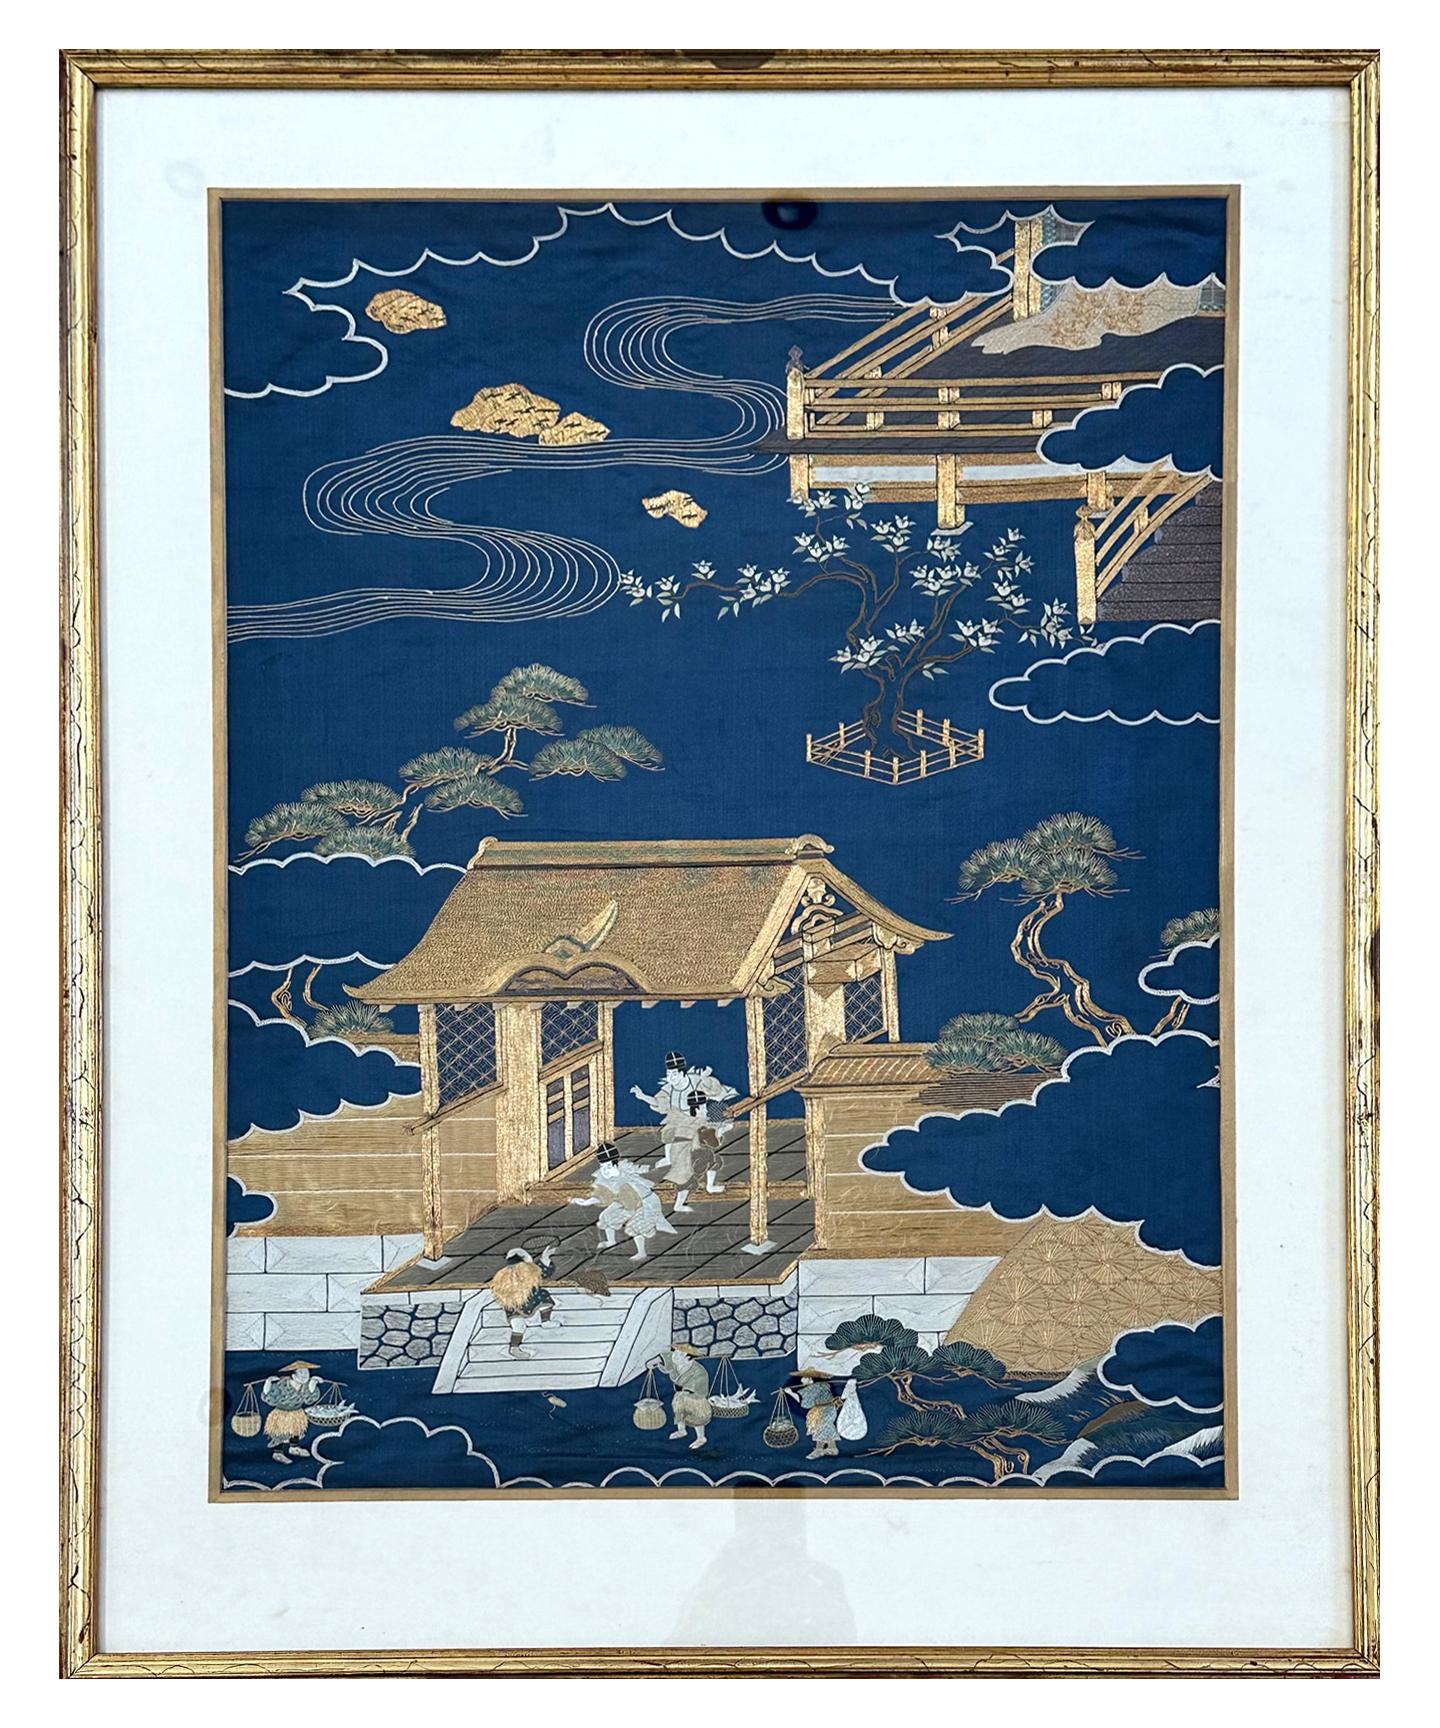 Ein japanisches Fukusa-Paneel aus Seide in einem vergoldeten Rahmen aus der Meiji-Periode (ca. Ende des 19. Jahrhunderts). Fukusa ist eine traditionelle japanische Textilkunst, mit der Geschenke bei wichtigen Anlässen verpackt werden. Auf dem